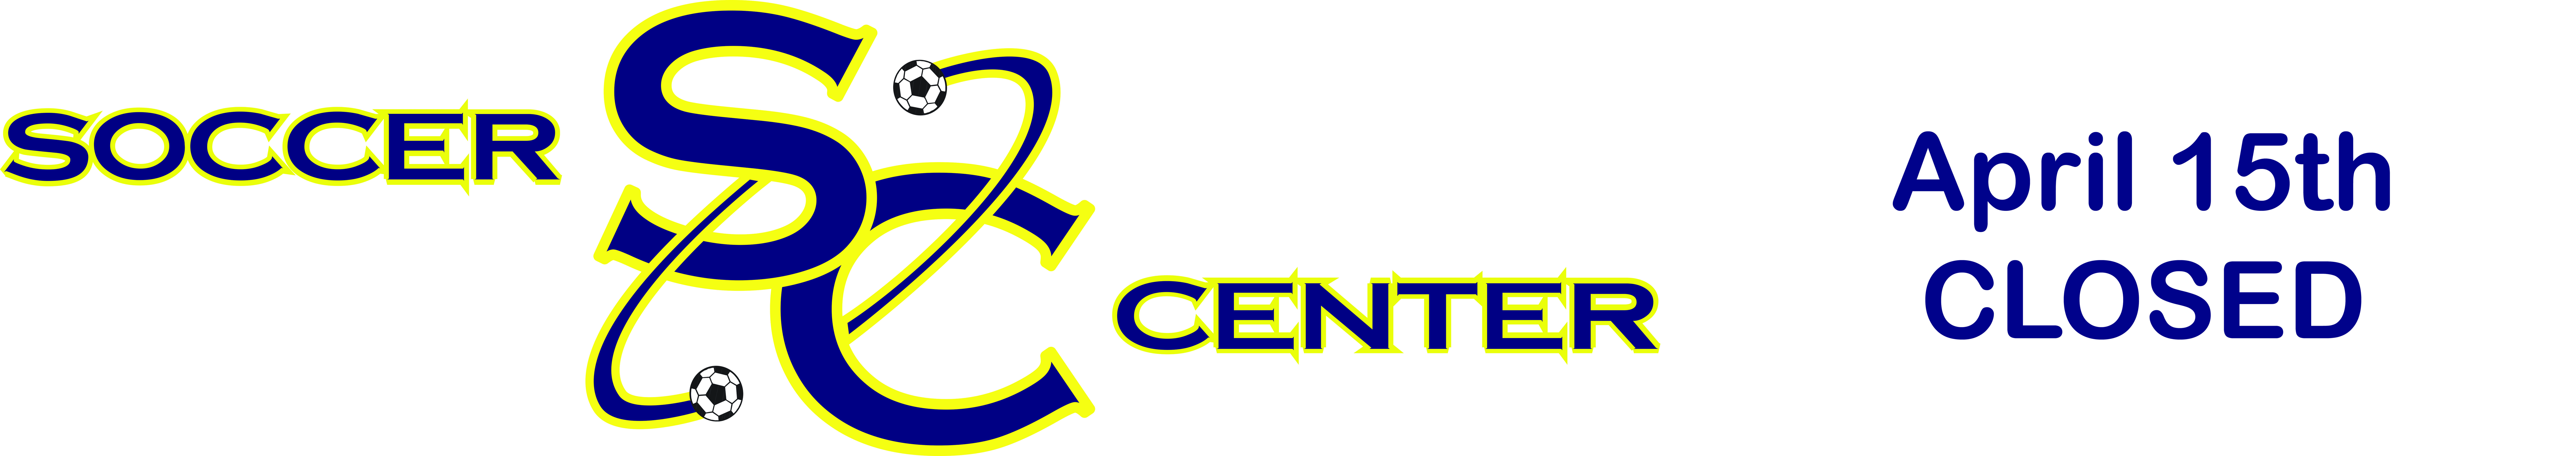 Soccer Center logo